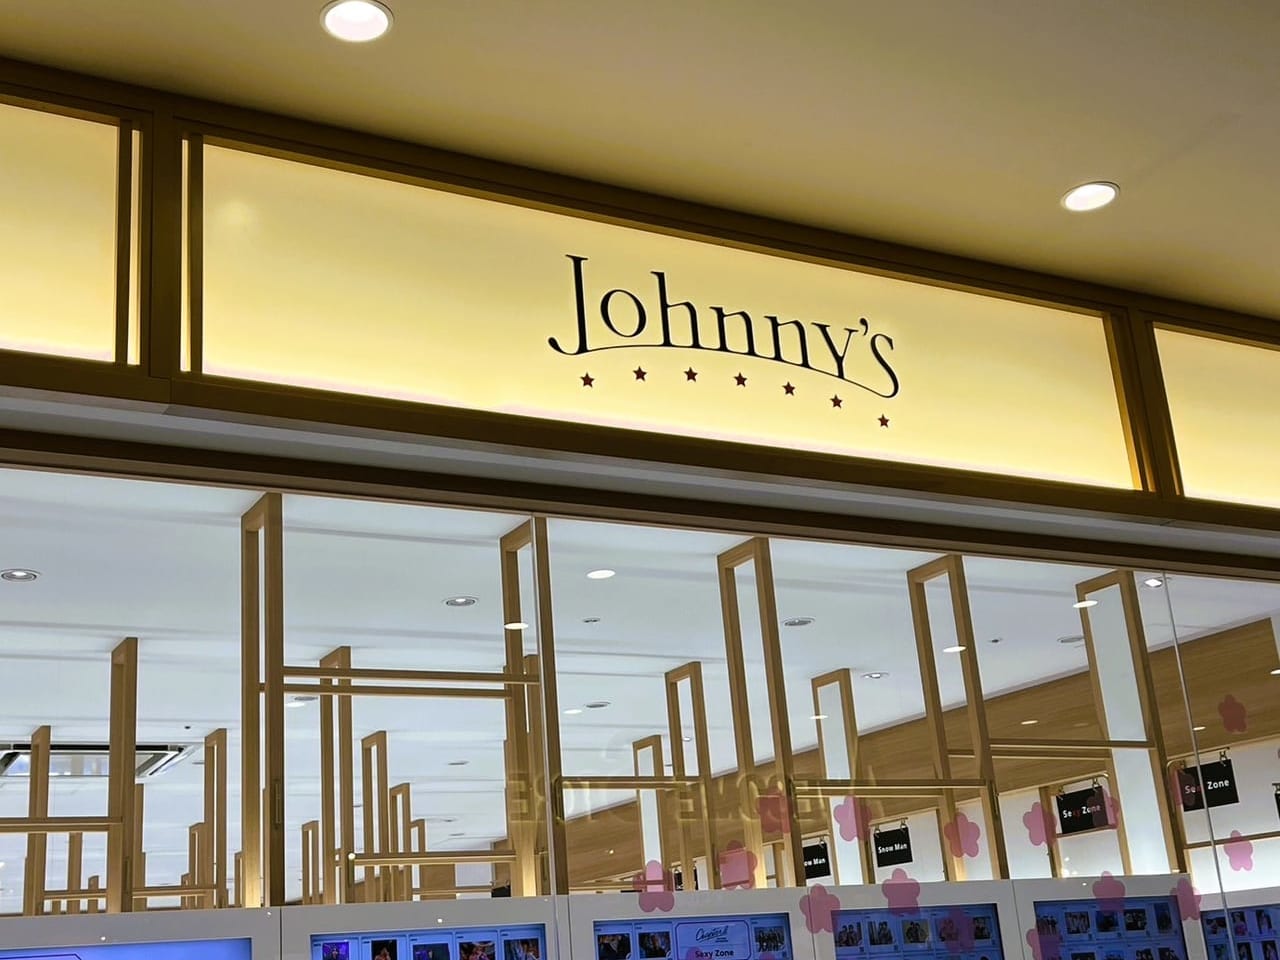 『 ジャニーズショップ福岡 』の ”Johnny's” の看板が下ろされていました。